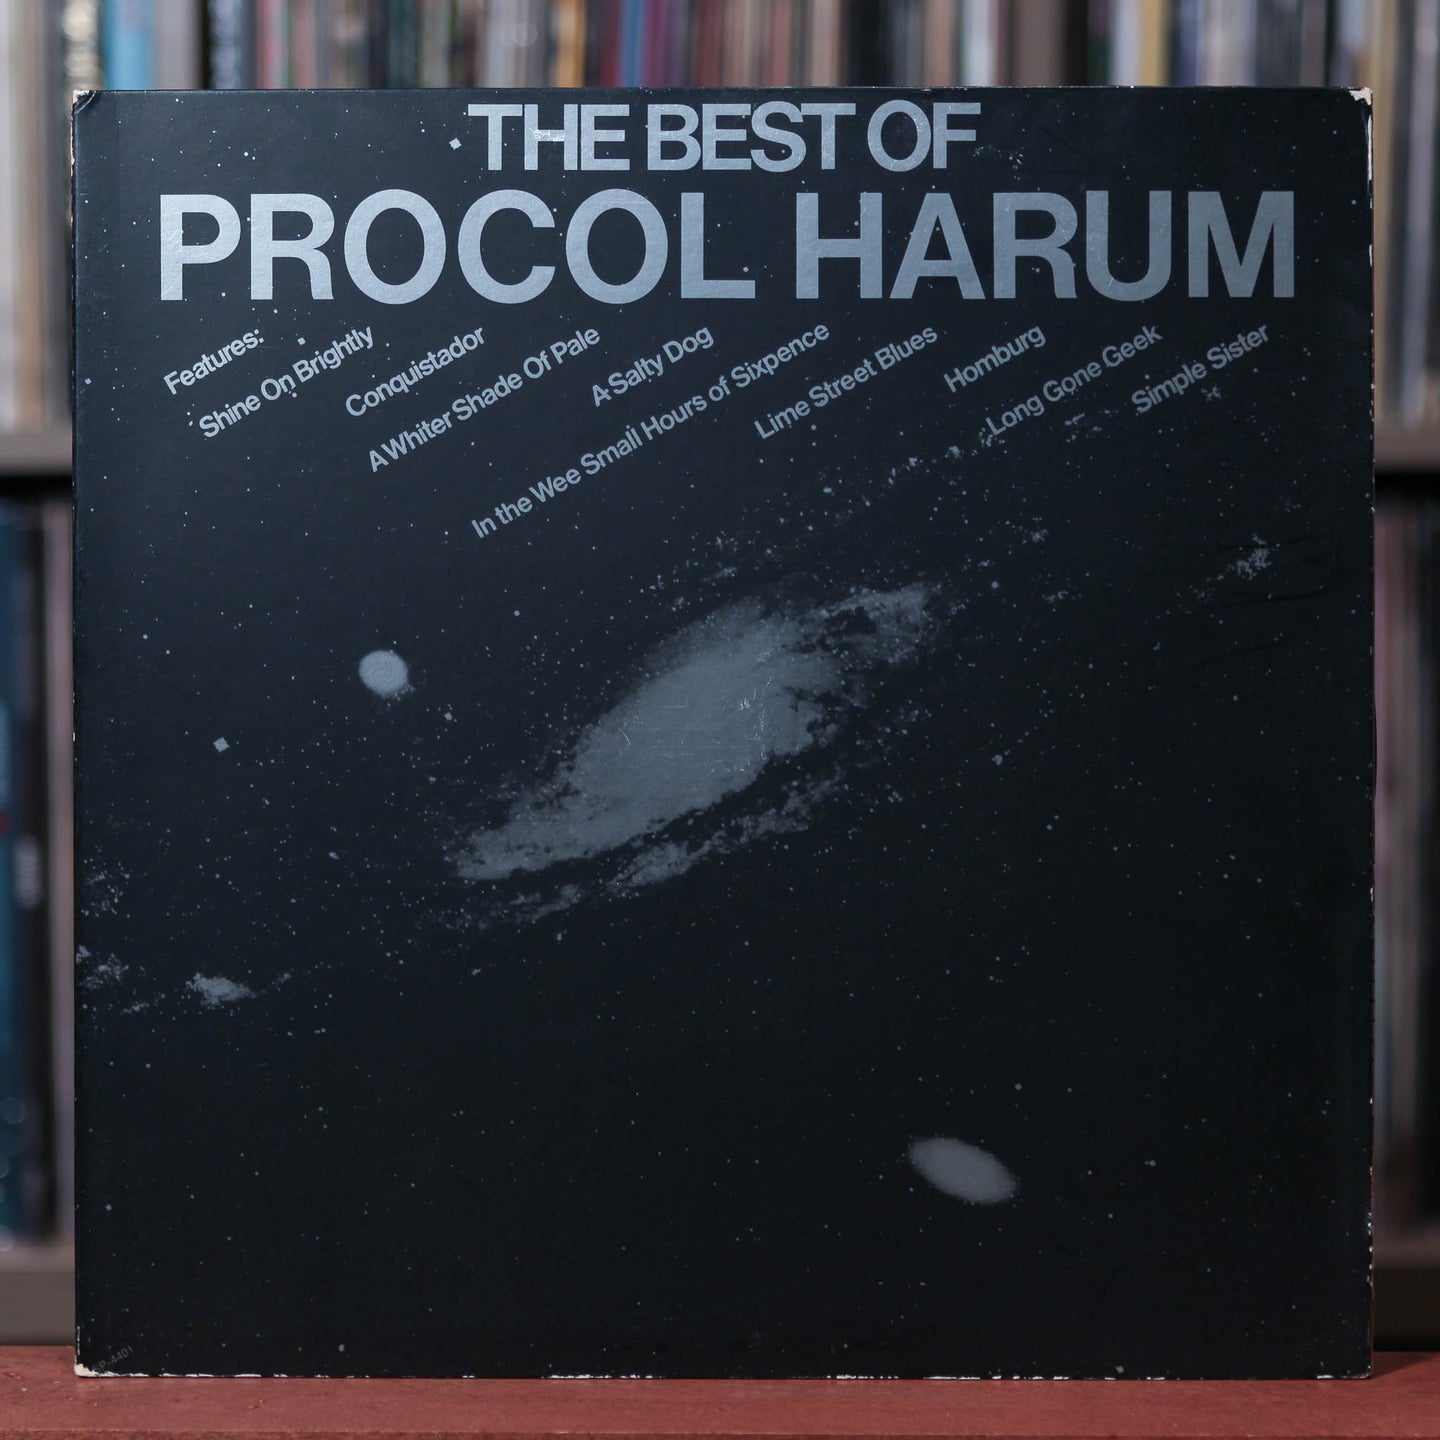 Procol Harum - Best Of - 1972 A&M, VG+/VG